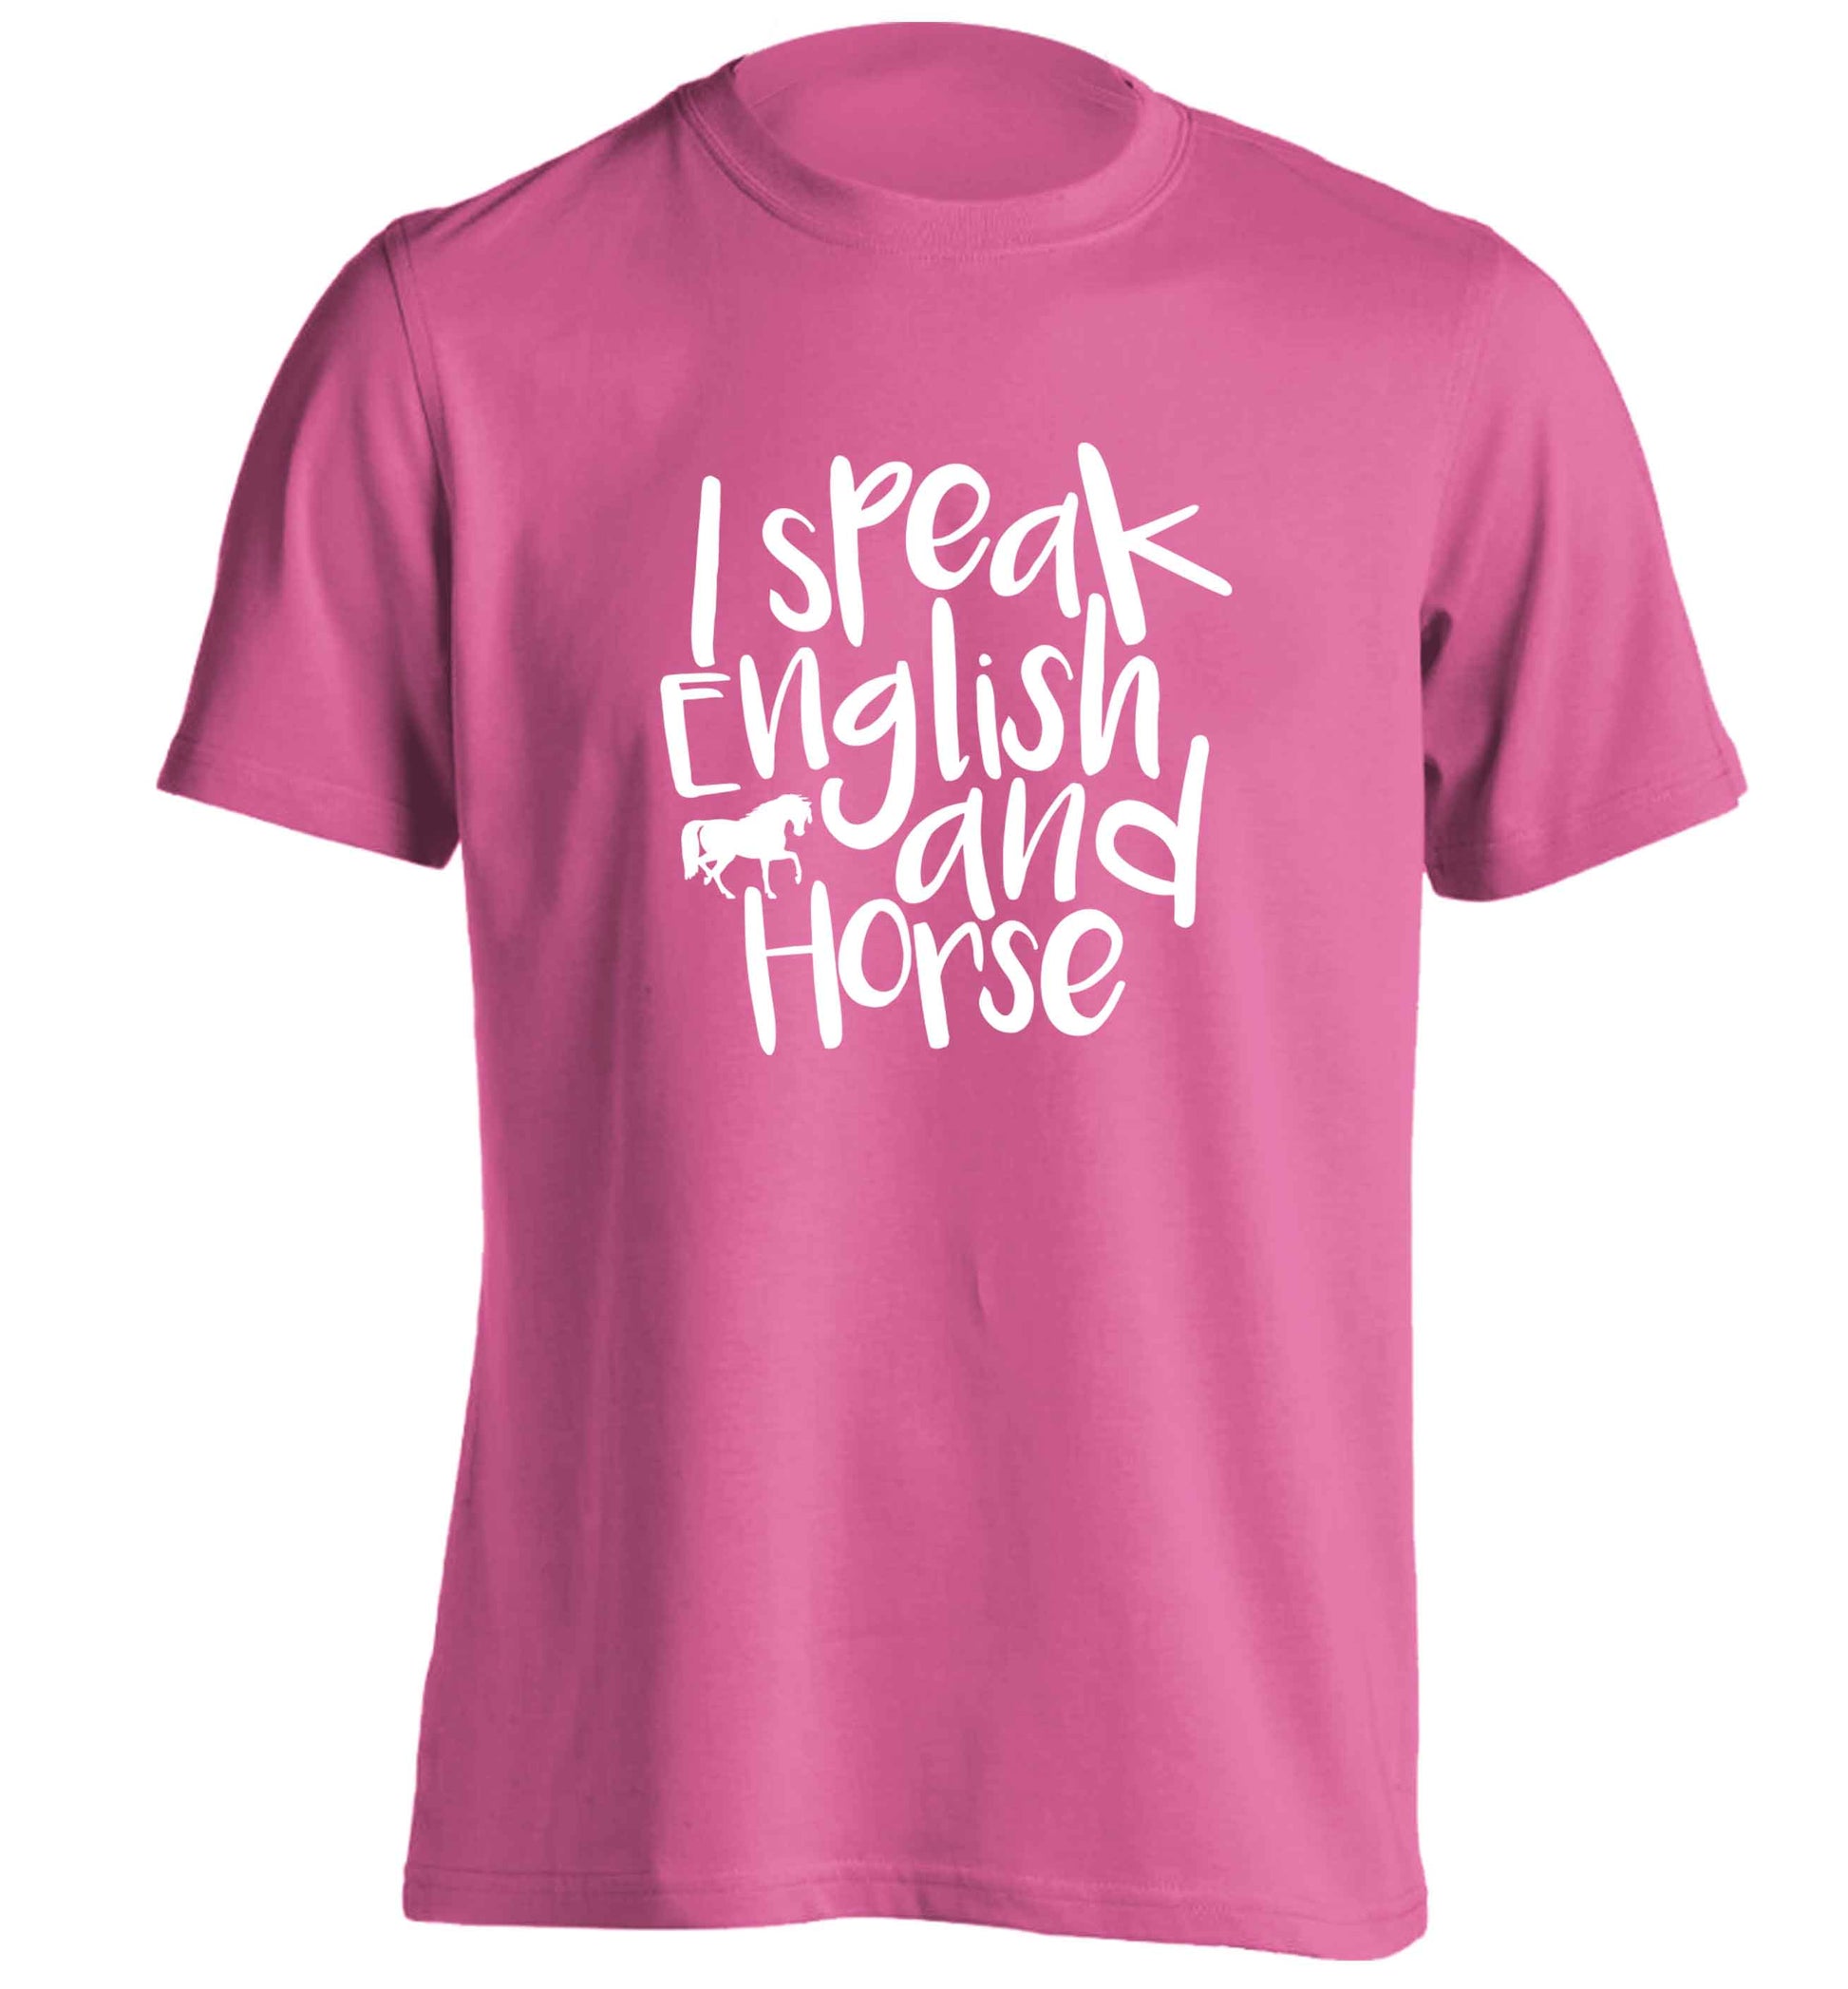 I speak English and horse adults unisex pink Tshirt 2XL